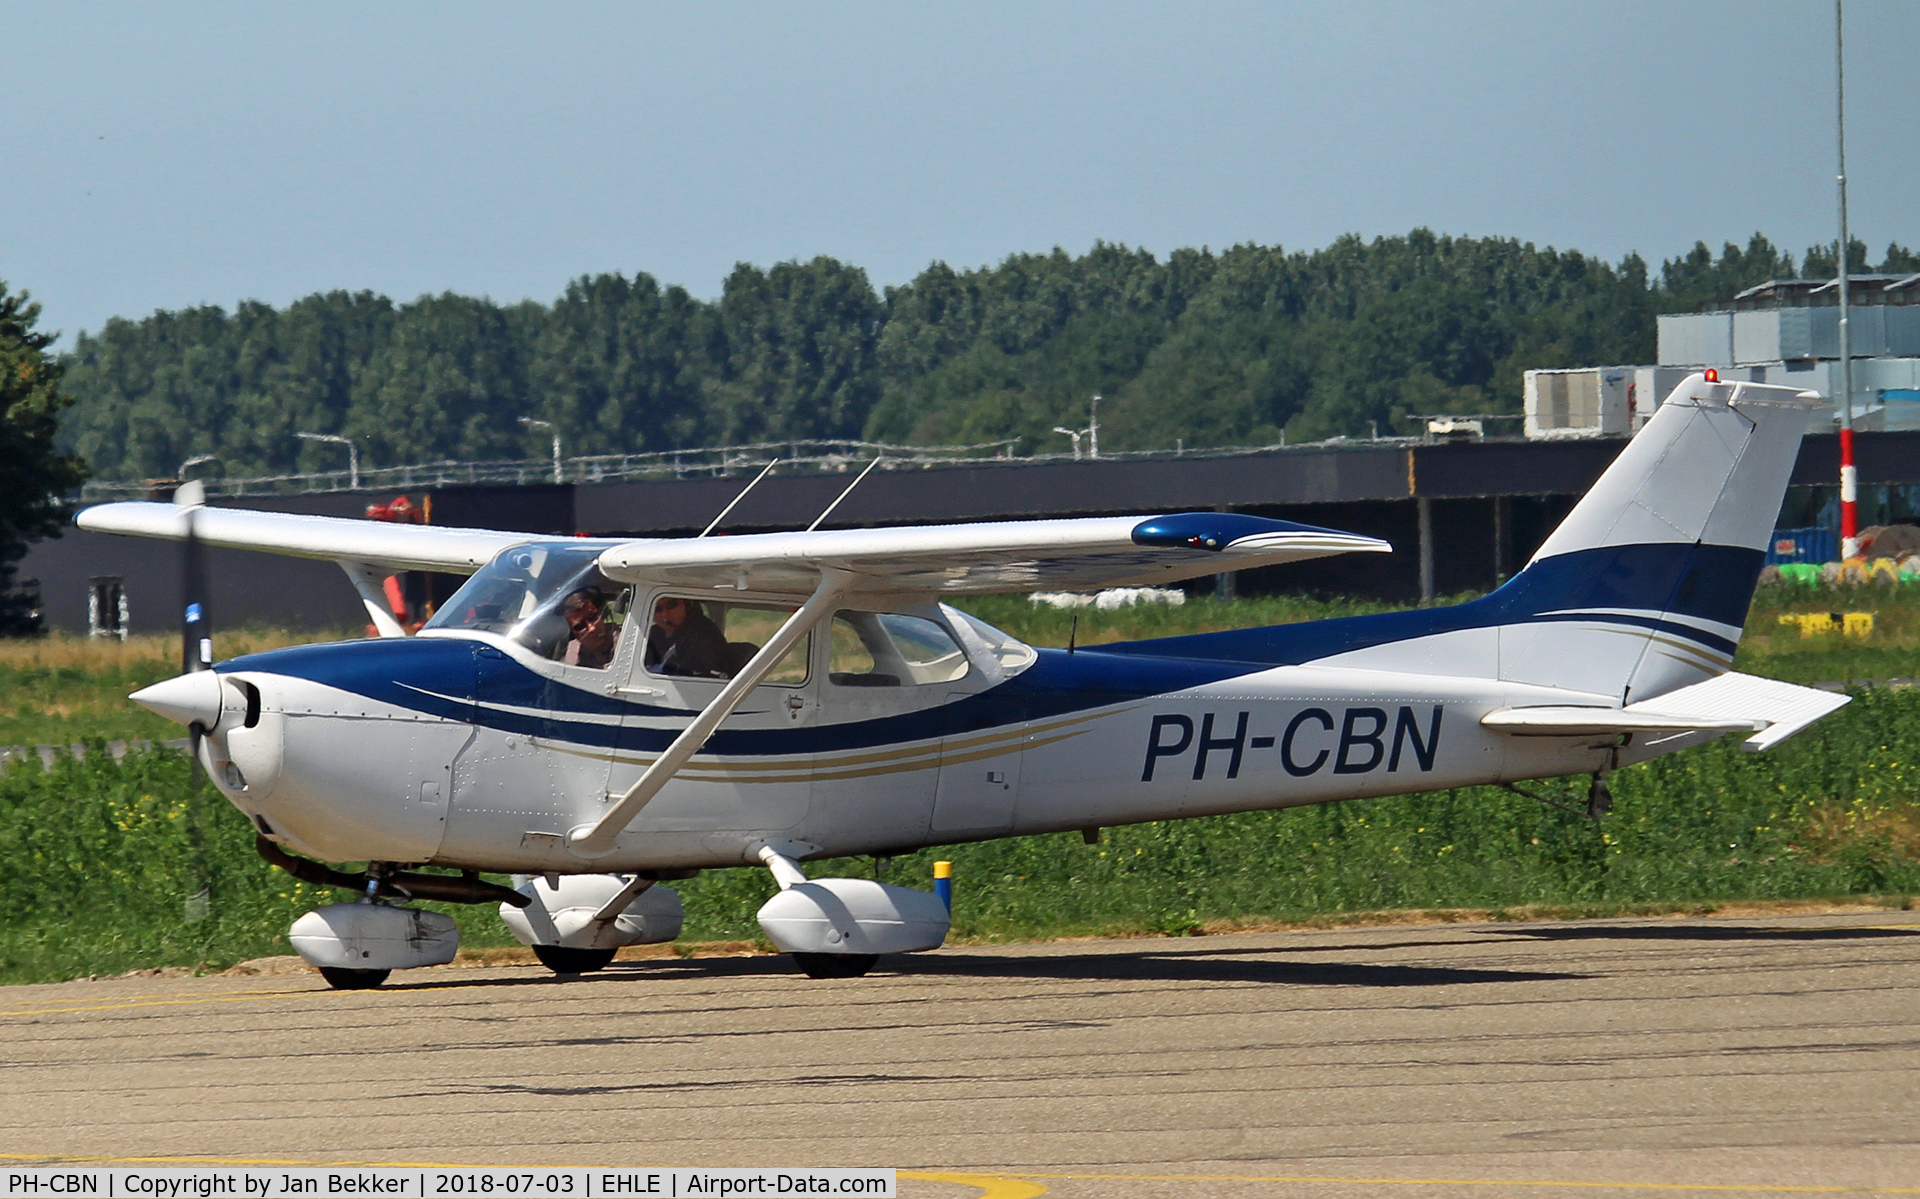 PH-CBN, 1980 Reims F172N Skyhawk C/N 1985, Lelystad Airport